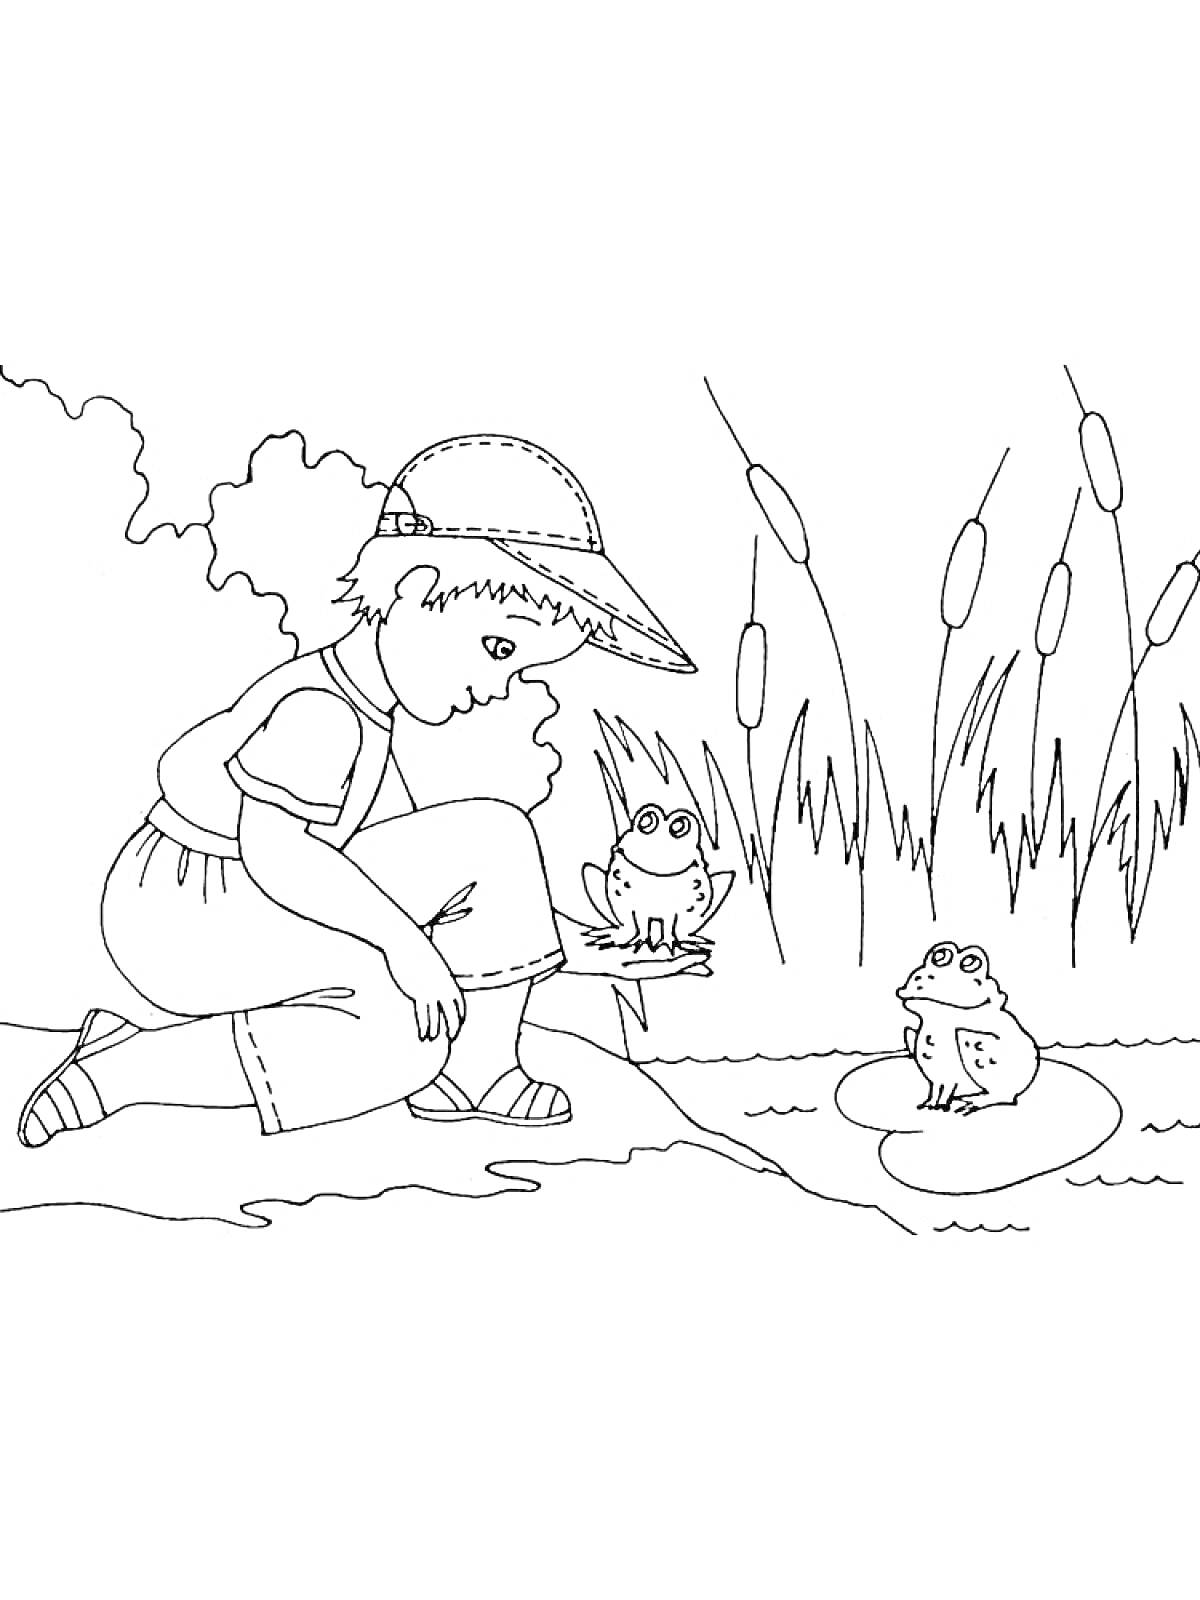 Ребенок в шляпе разговаривает с лягушками на берегу пруда